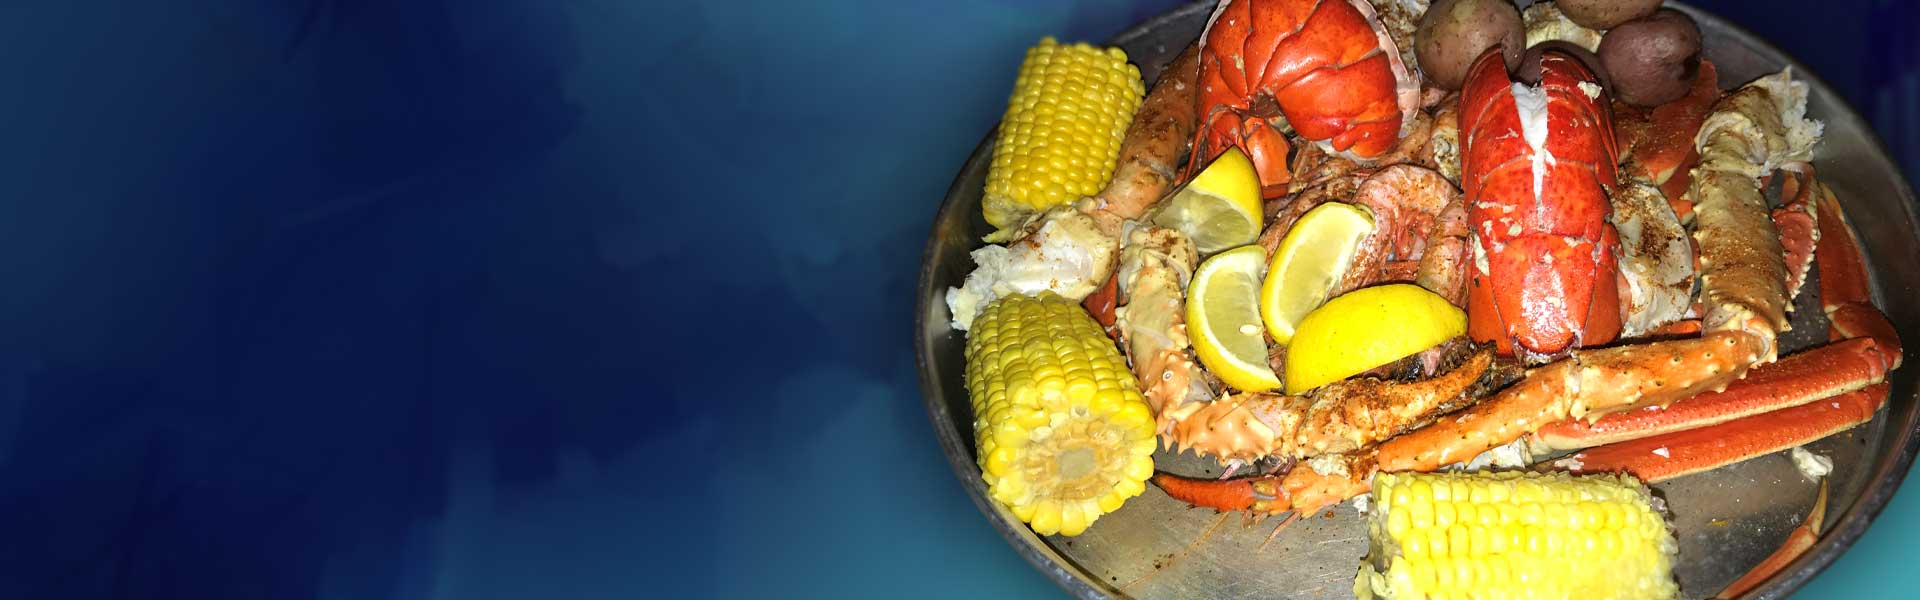 https://oldbaysteamerfwb.com/wp-content/uploads/2020/09/slider-steamed-seafood-2.jpg